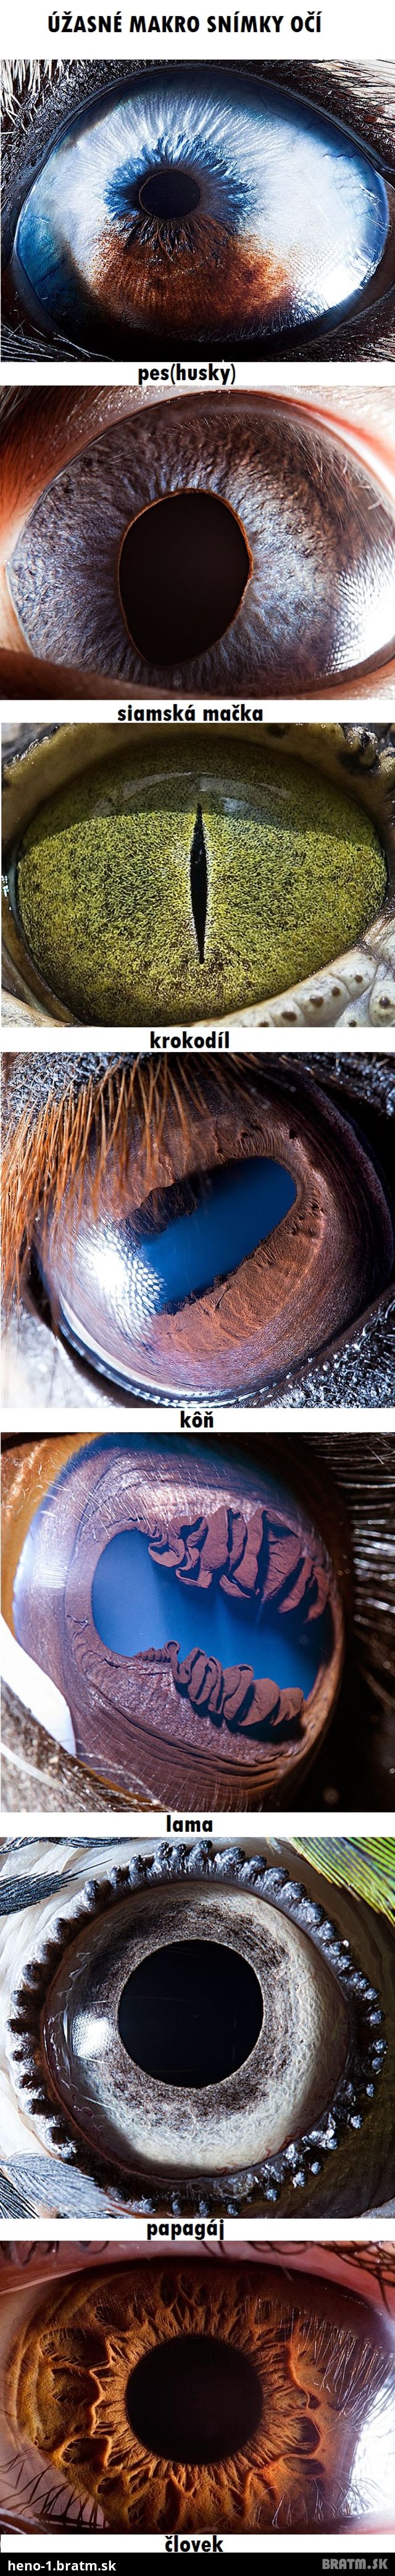 Úžasné makro fotografie zvieracích očí :) Taktiež pozri, ako vyzerá makro snímka ľudského oka :)